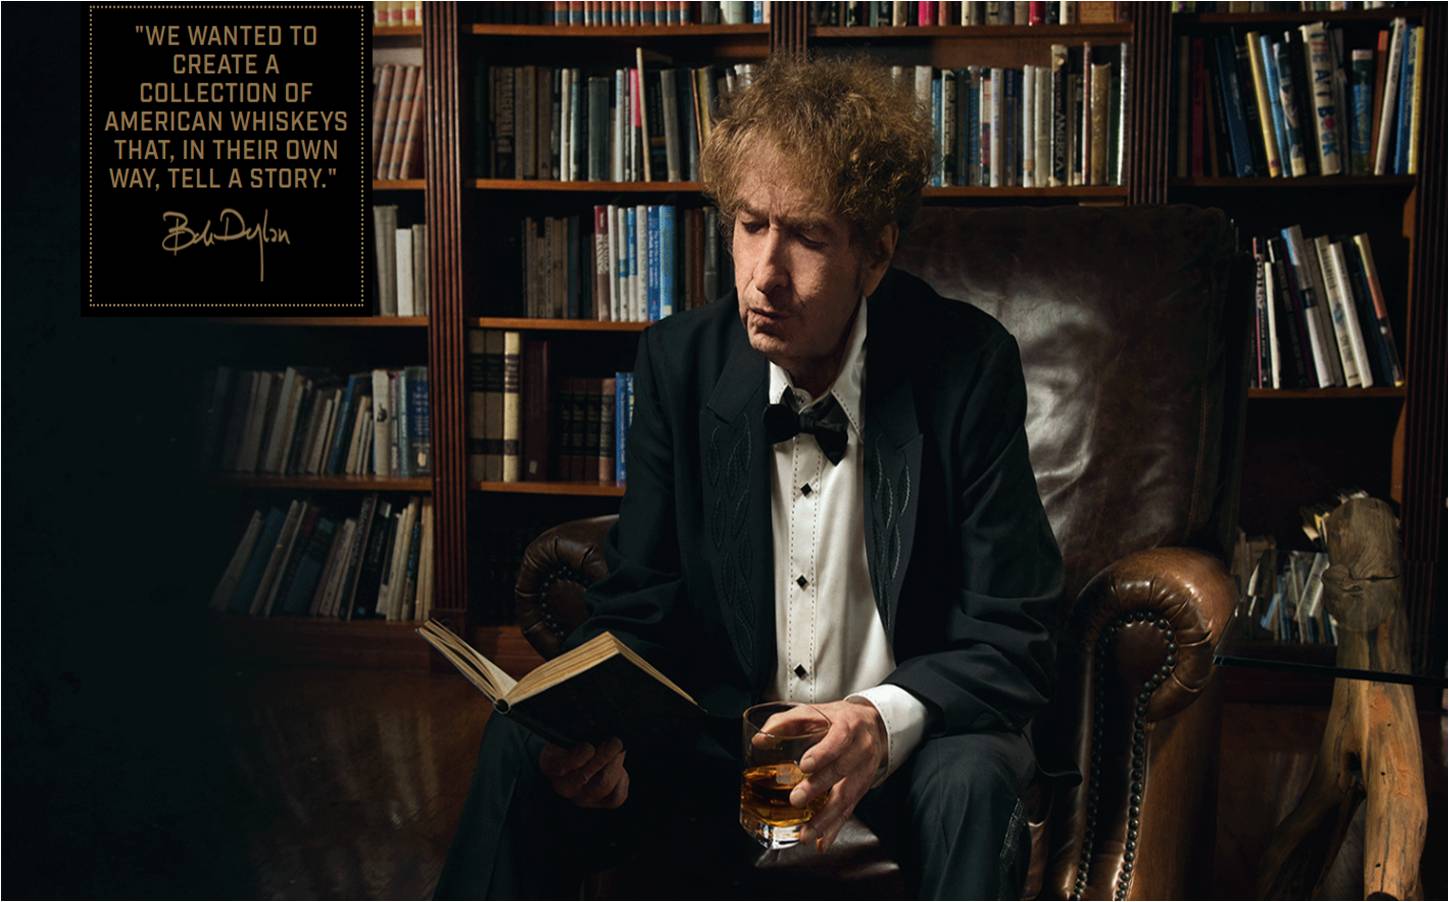 Bob Dylan tomando whiskey